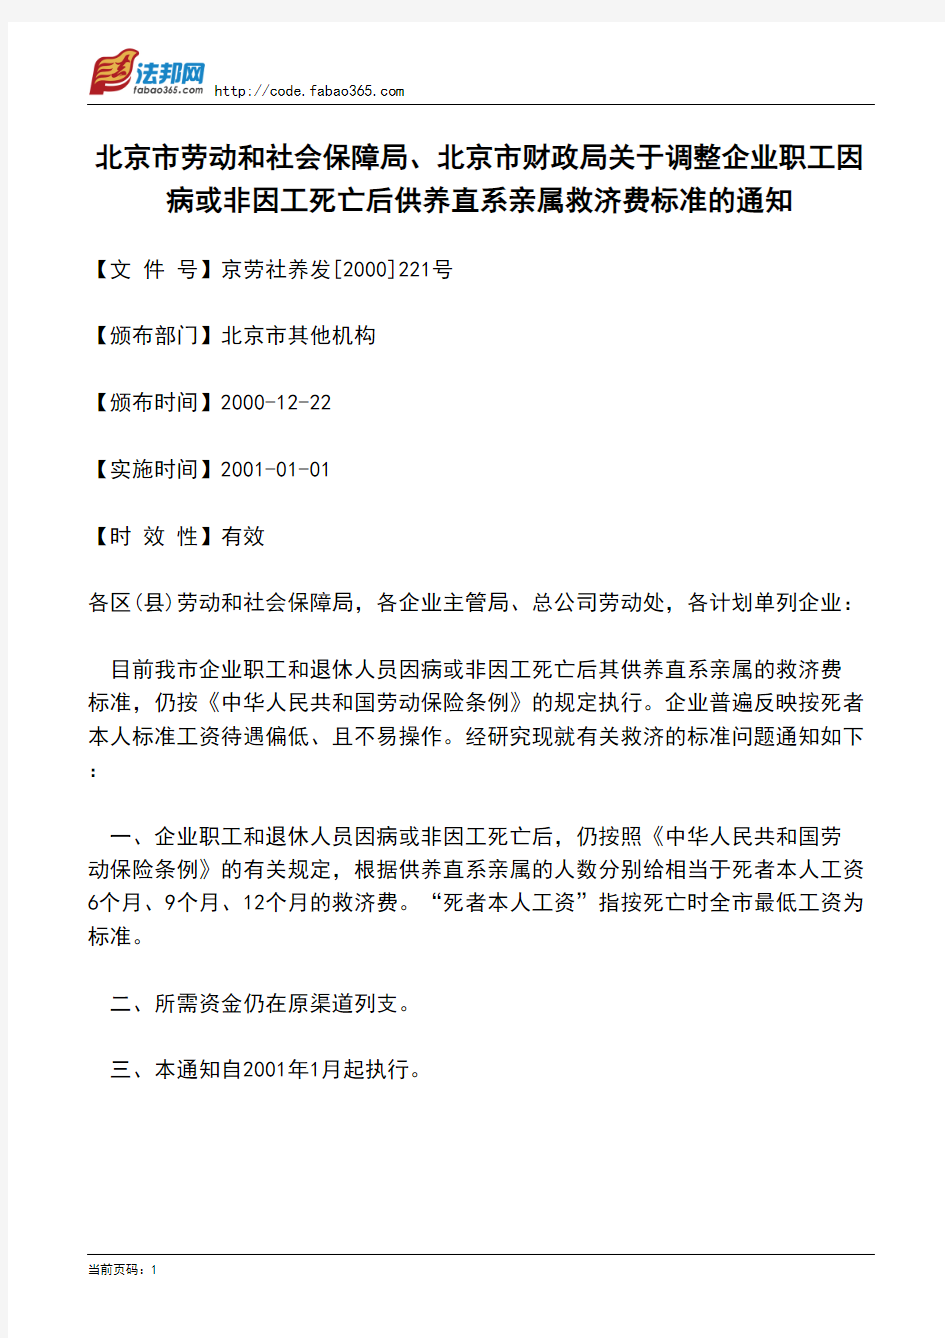 北京市劳动和社会保障局、北京市财政局关于调整企业职工因病或非因工死亡后供养直系亲属救济费标准的通知